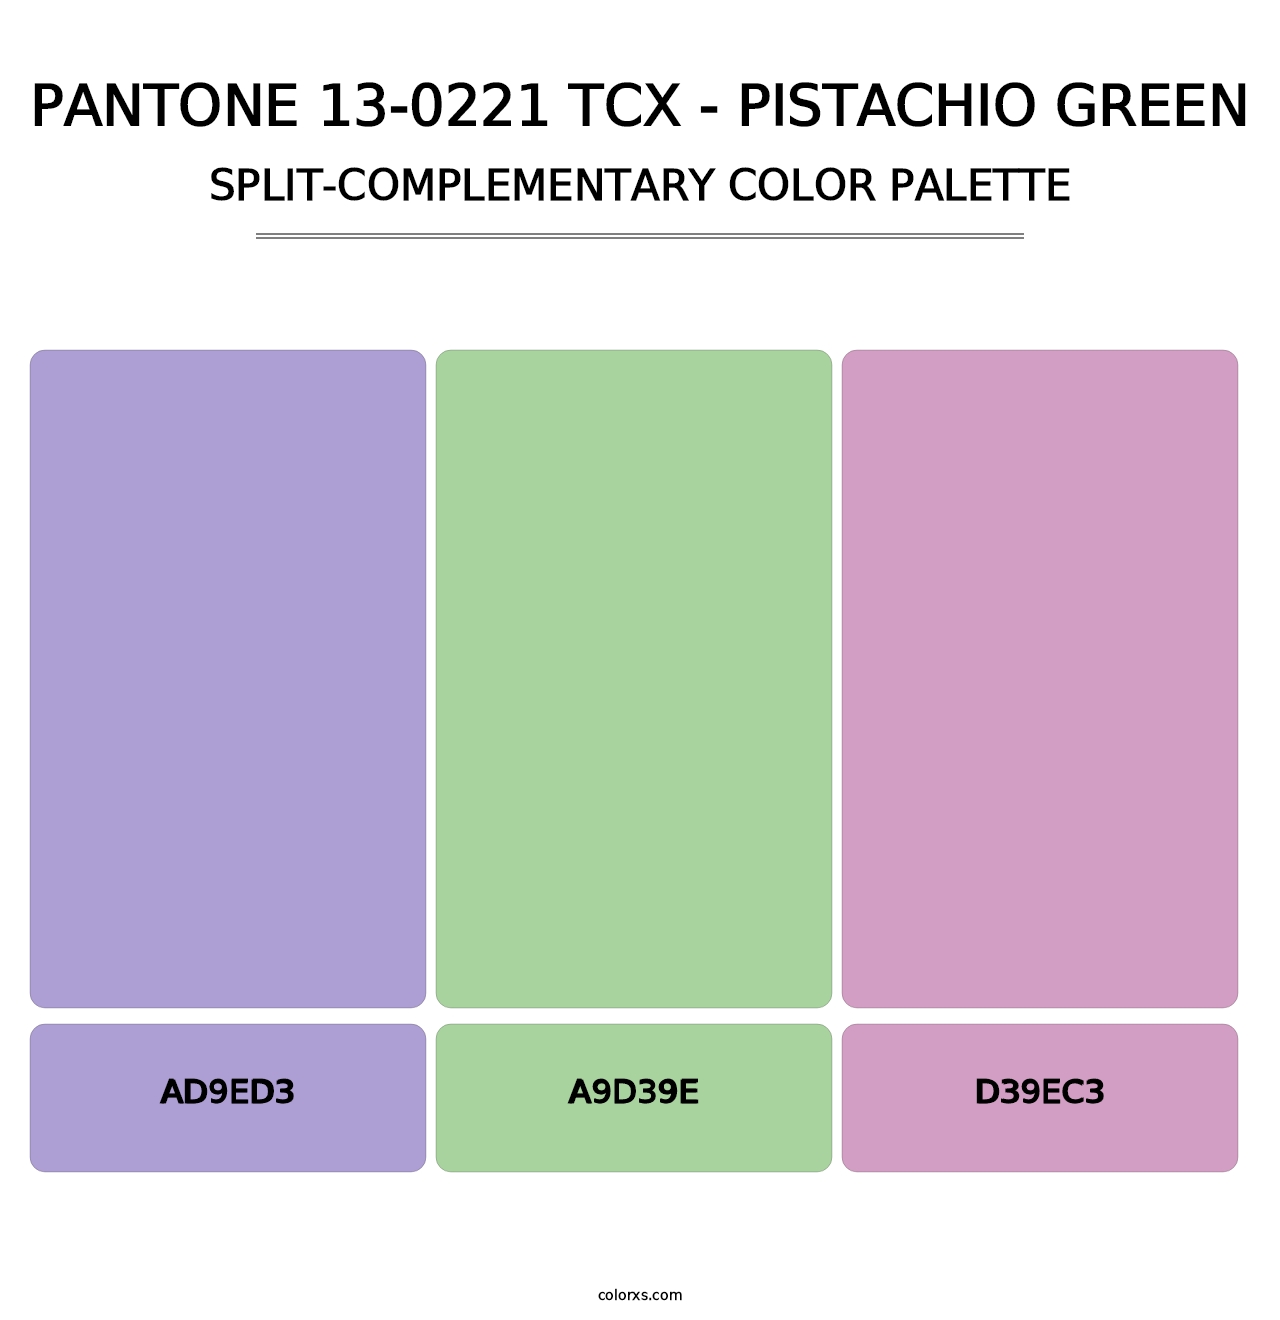 PANTONE 13-0221 TCX - Pistachio Green - Split-Complementary Color Palette